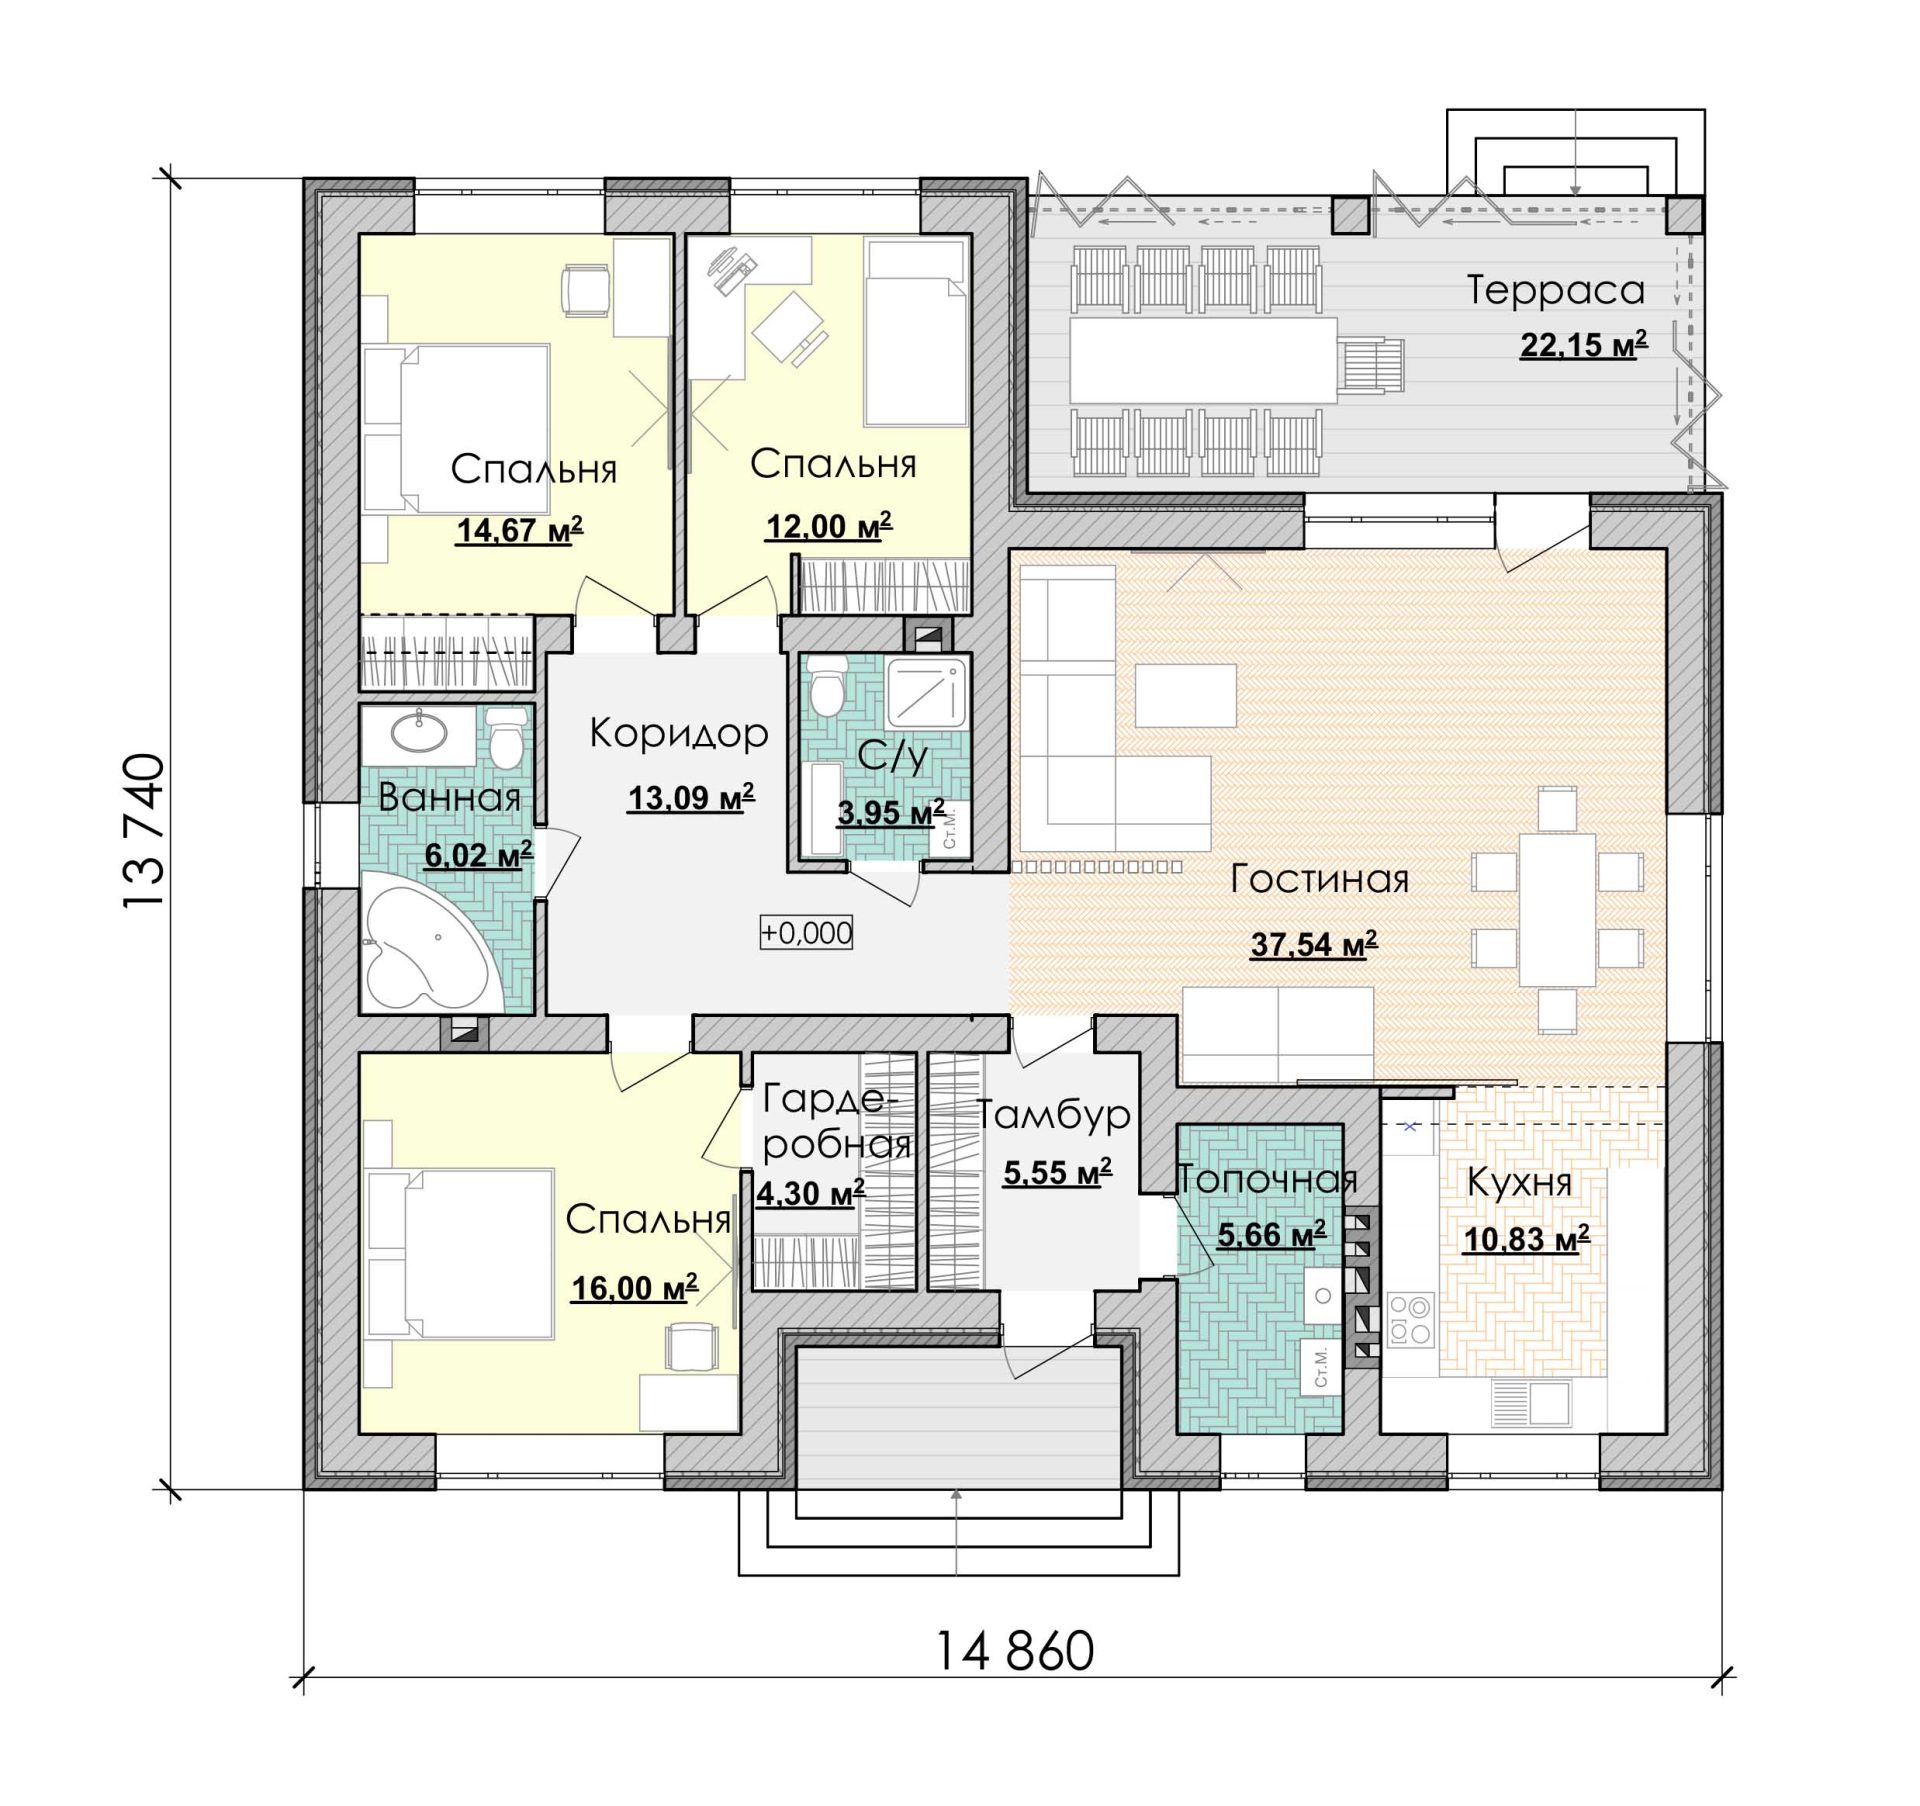 Готовый план стильного одноэтажного дома с тремя спальнями и уютной застекленной террасой